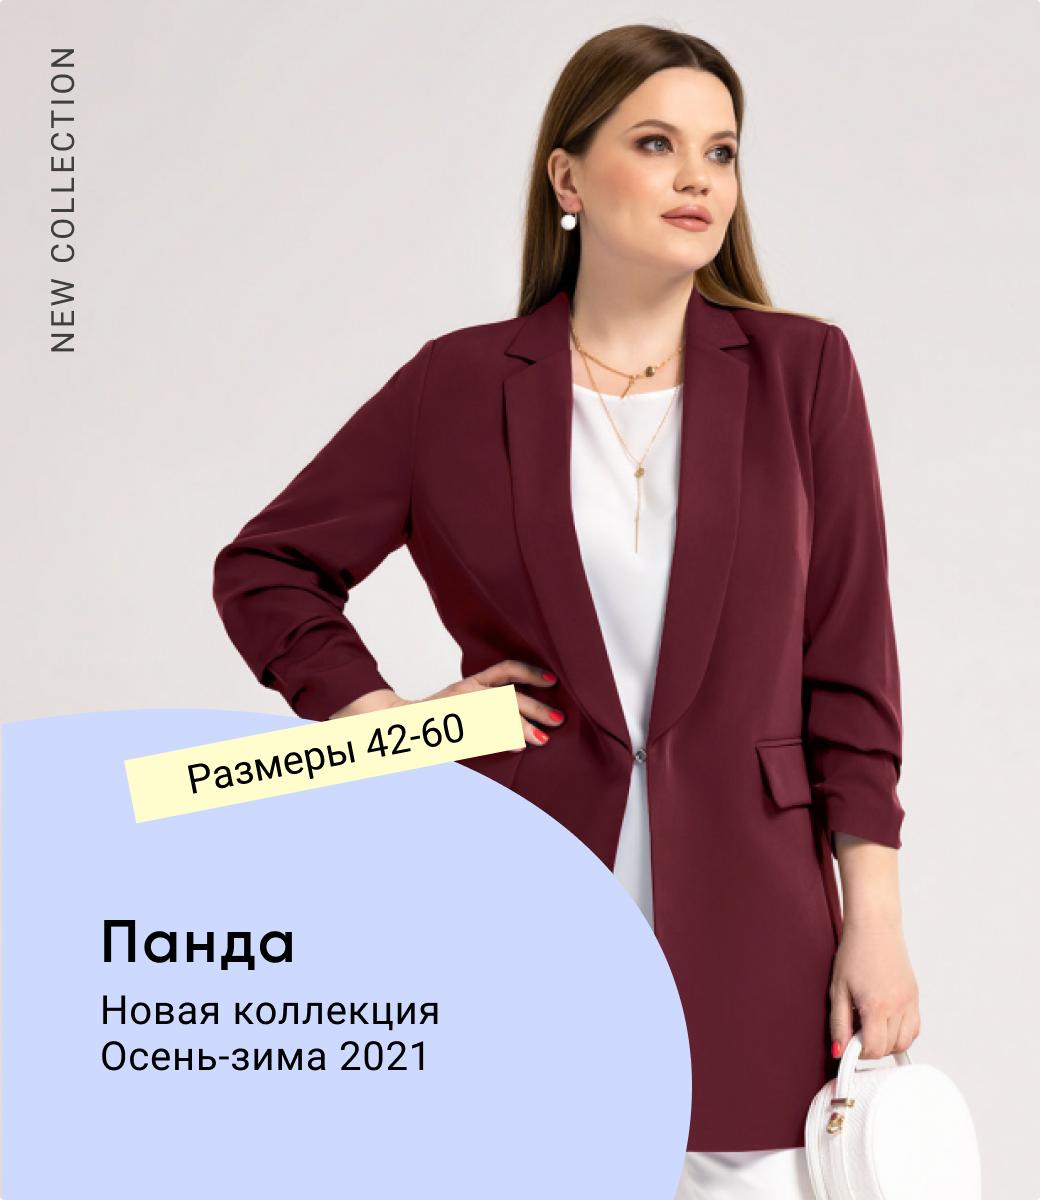 Монро 24 Интернет Магазин Белорусской Одежды Отзывы